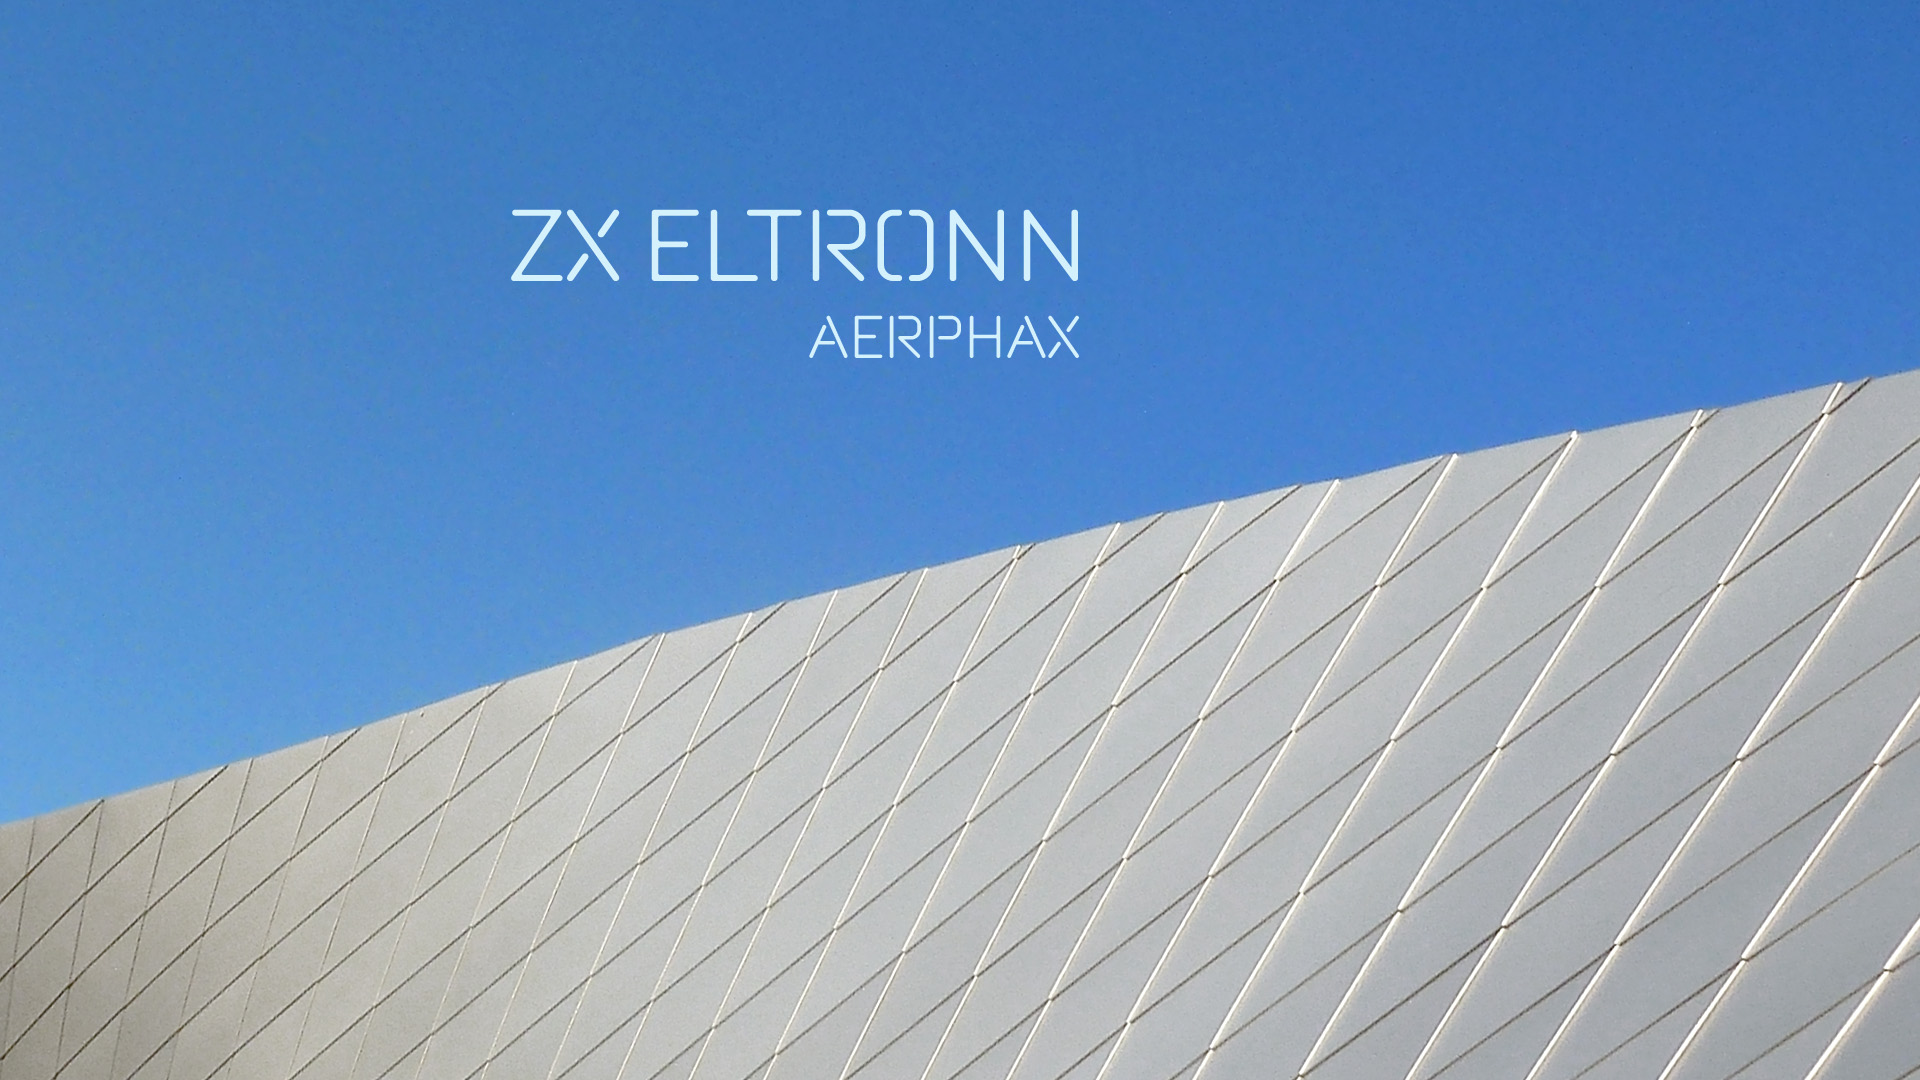 AERPHAX - ZX ELTRONN - COVER ART DESIGN